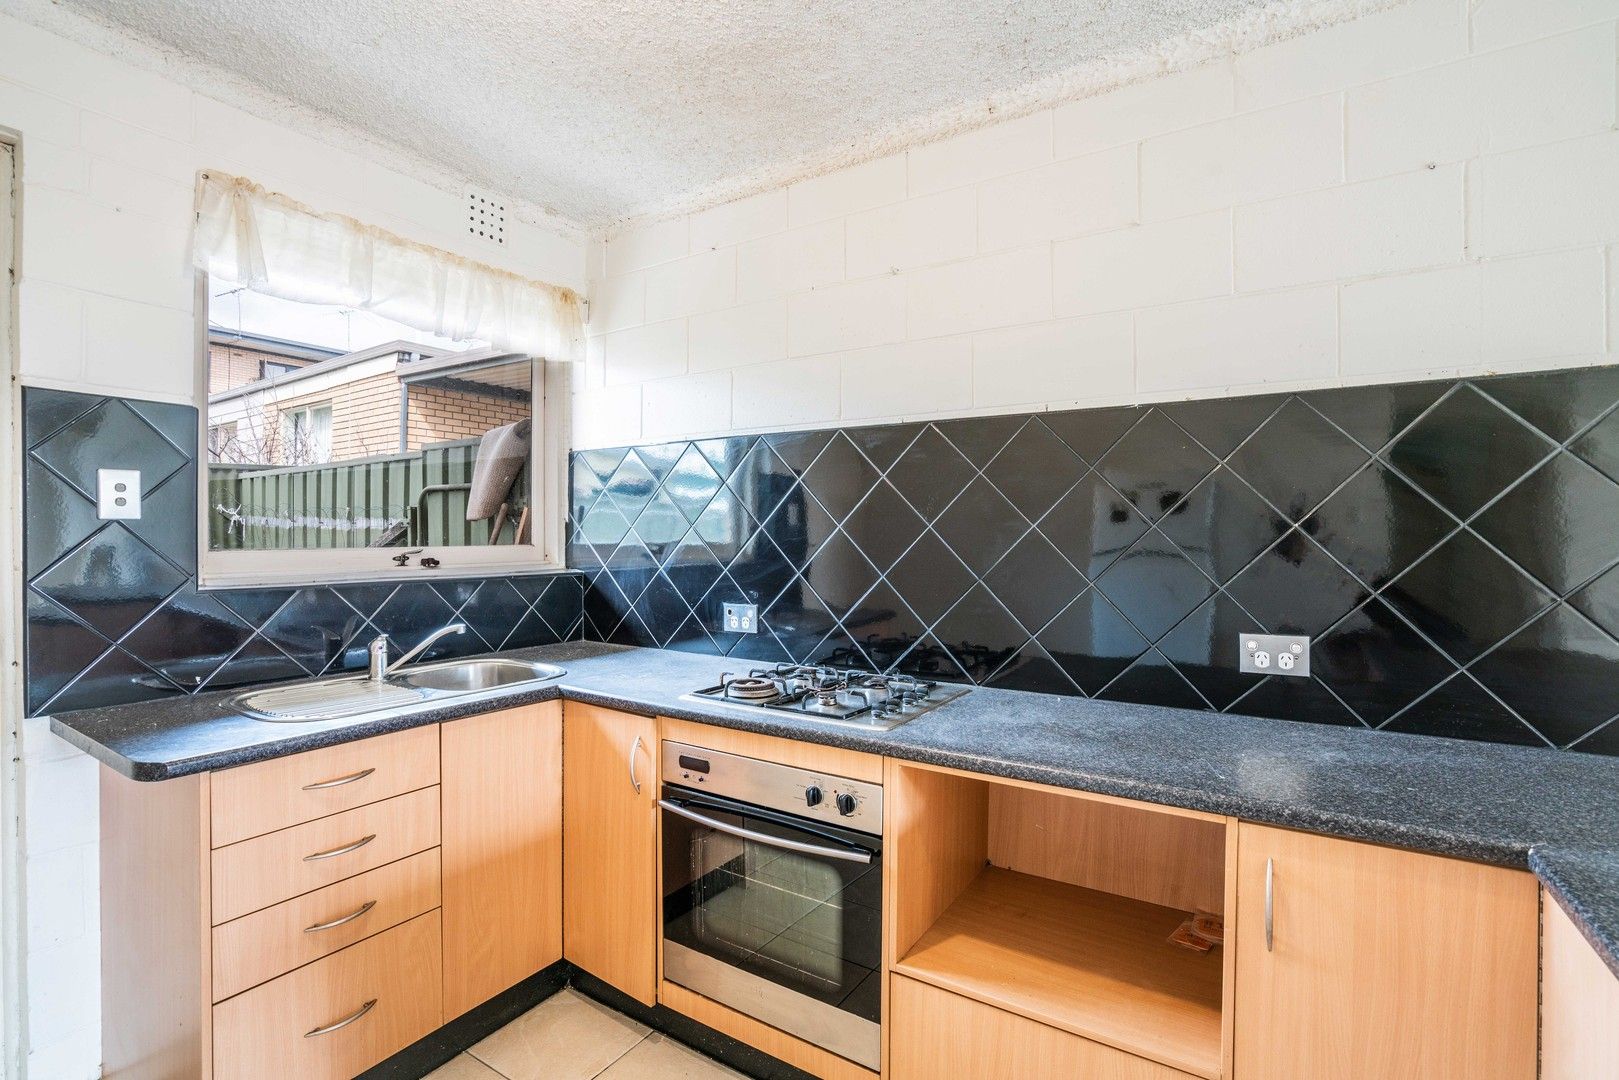 2 bedrooms Apartment / Unit / Flat in 2/29 Sturt Road BEDFORD PARK SA, 5042